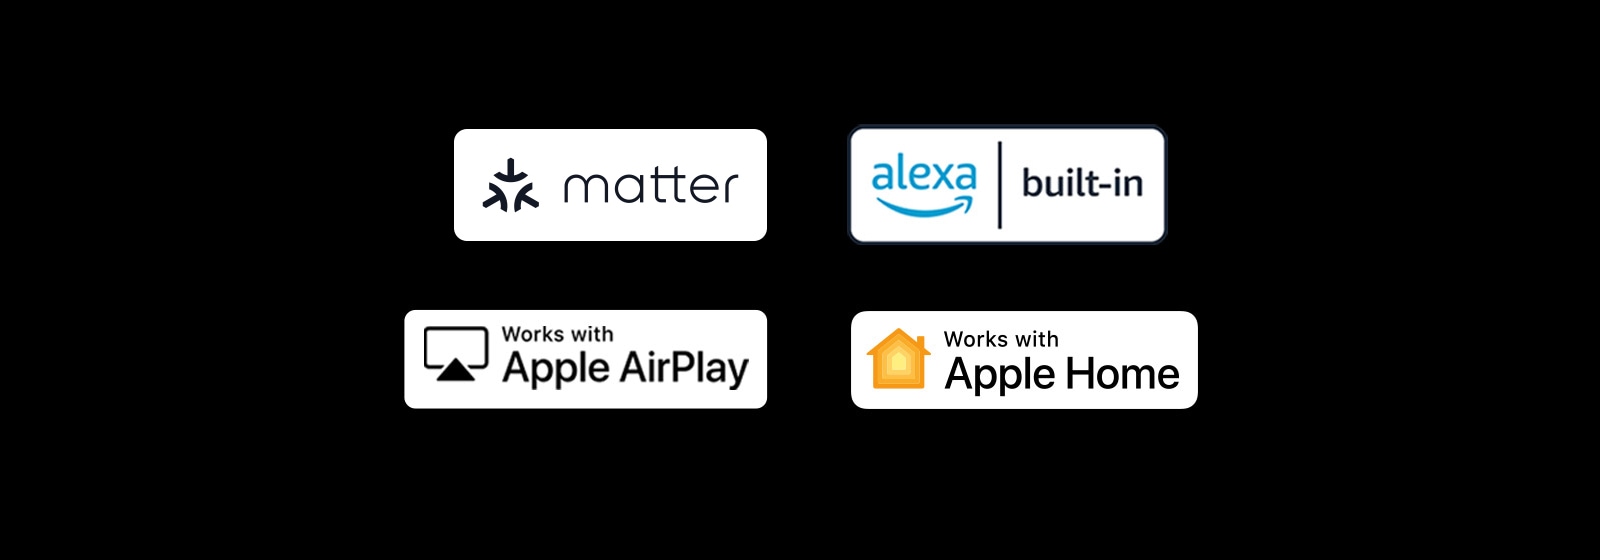 لوگوی alexa built-in لوگوی پشتیبانی از Apple AirPlay لوگوی پشتیبانی از Apple Home لوگوی پشتیبانی از Matter